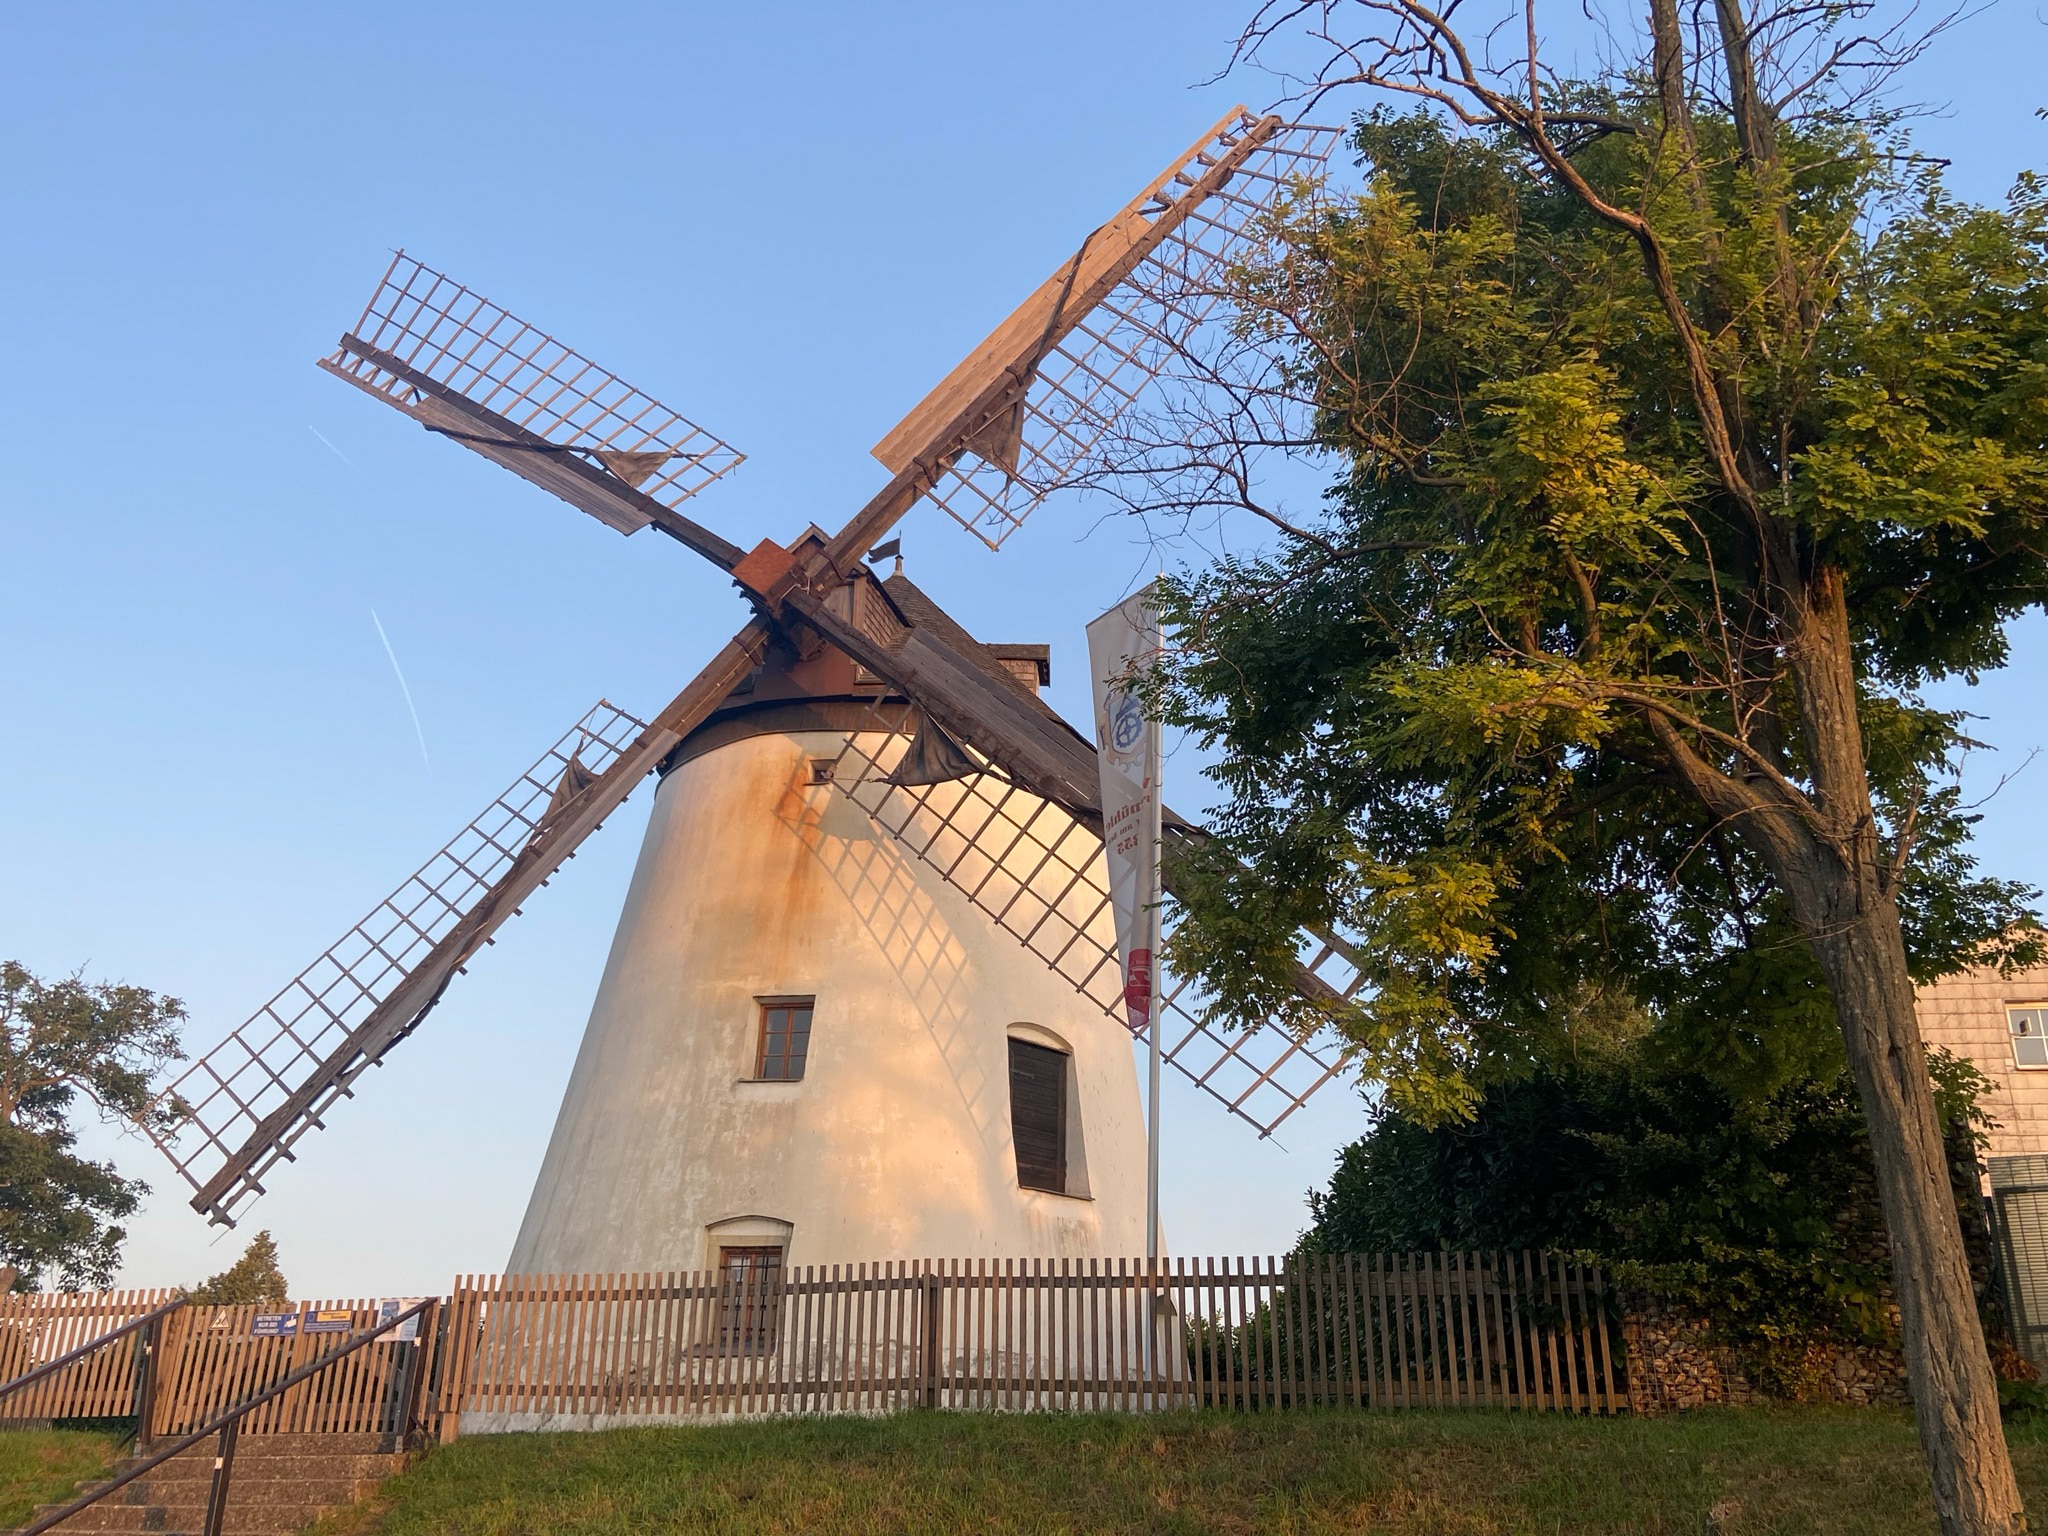 Windmühle von Podersdorf